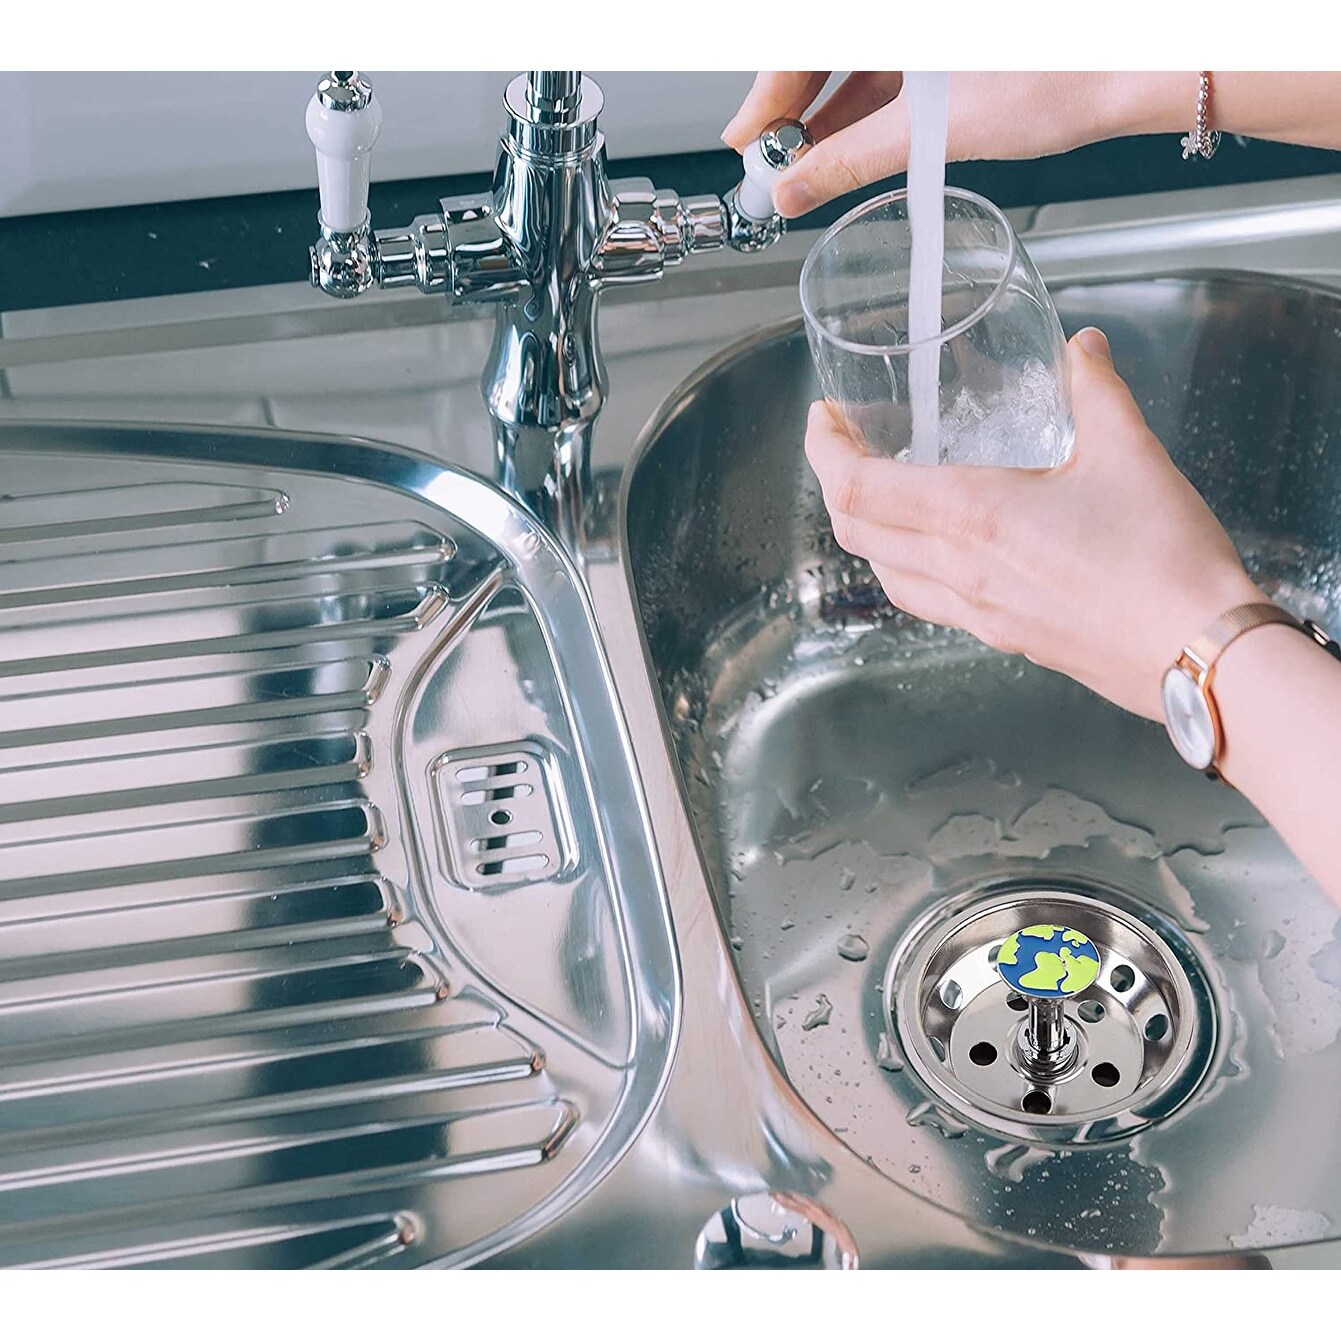 KRAUS Universal Kitchen Sink Strainer/ Stopper for Garbage Disposals - On  Sale - Bed Bath & Beyond - 38409931